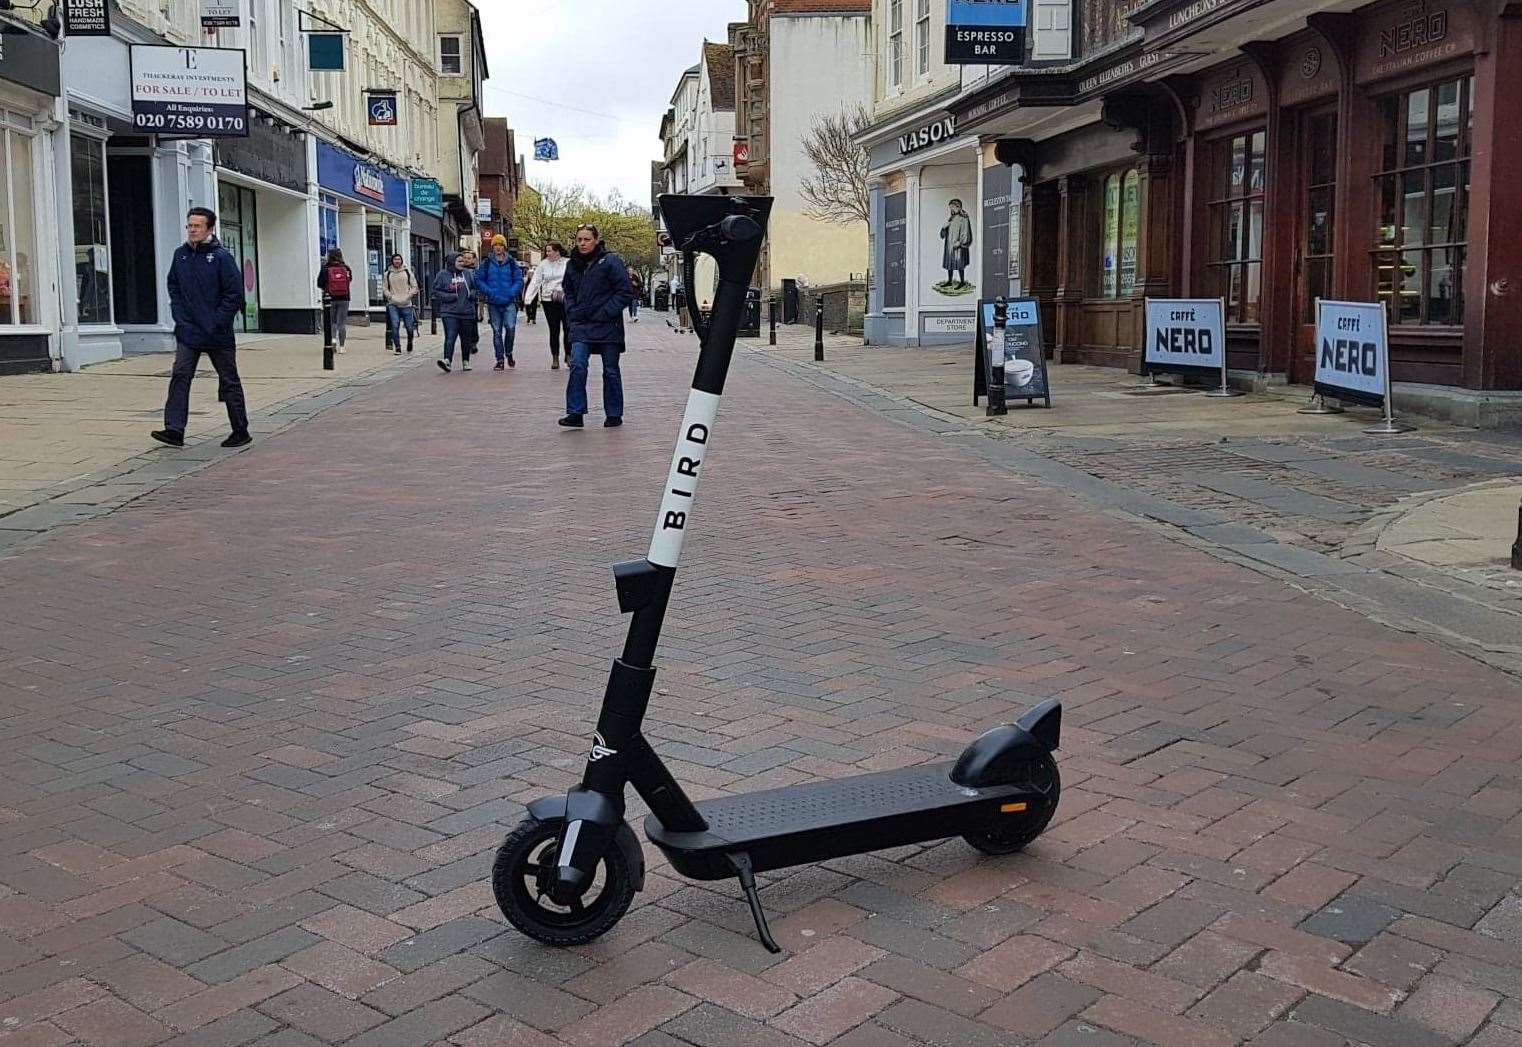 A Bird e scooter in Canterbury city centre